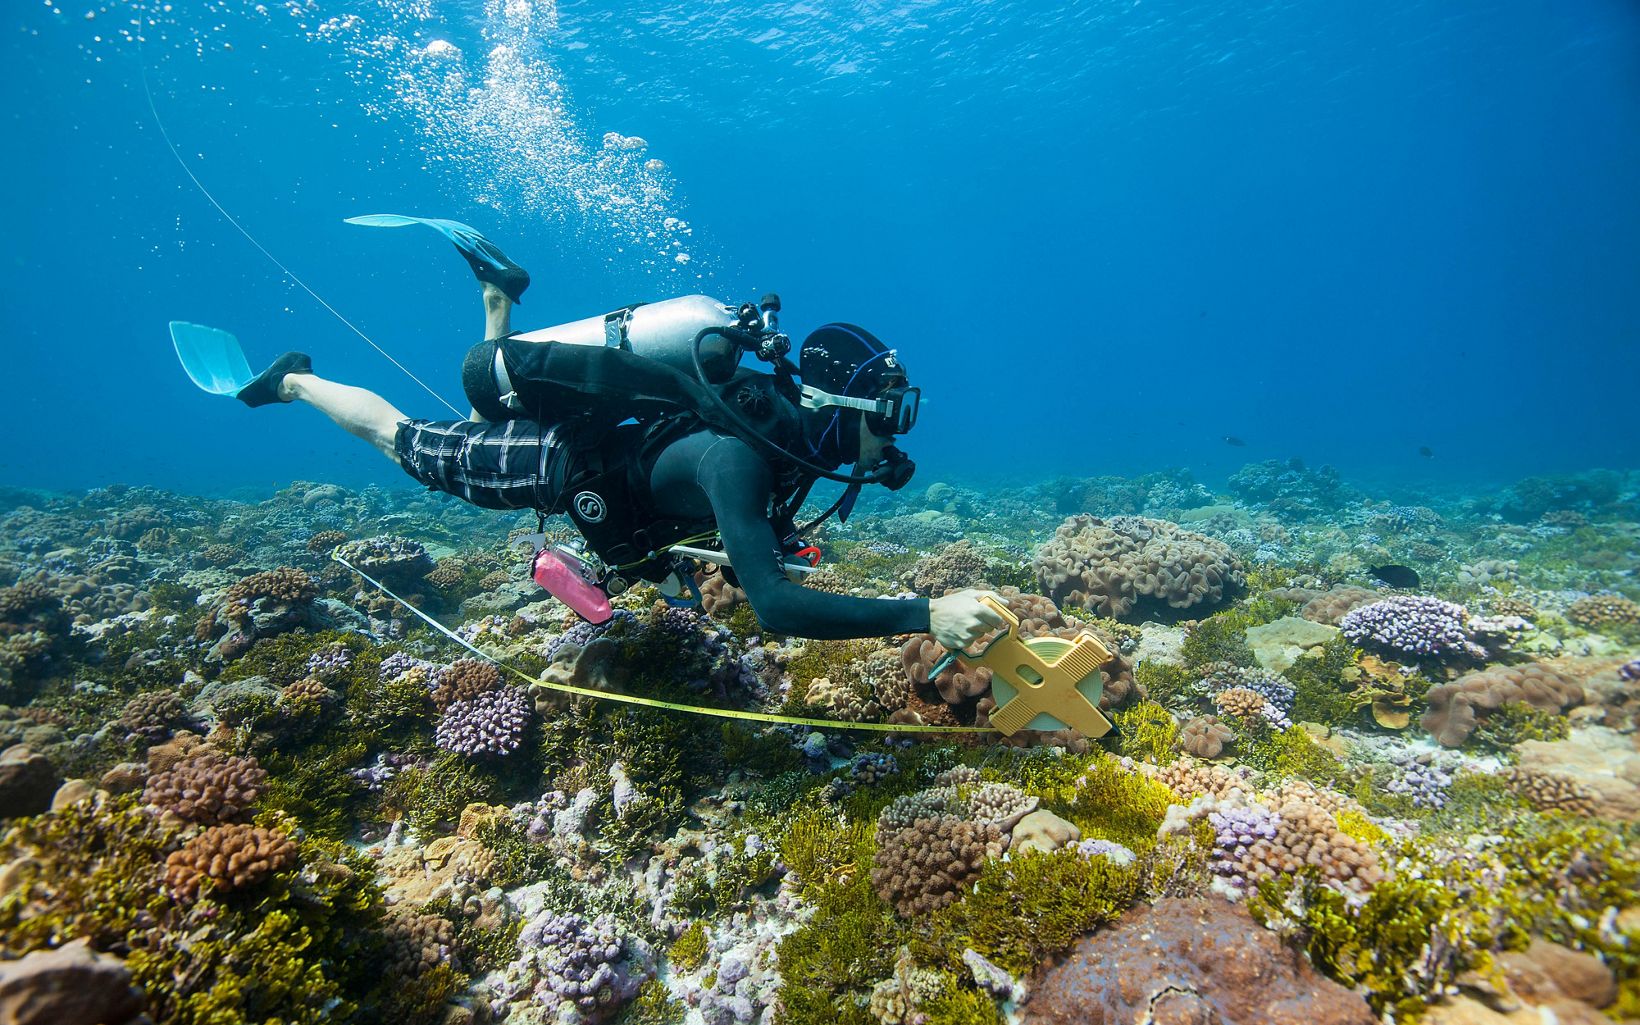 
                
                   Restaurar arrecifes de coral  The Nature Conservancy está trabajando para restaurar arrecifes de coral saludables a lo largo de la única pista de arrecifes de Florida.
                  © Carlton Ward Jr.
                
              